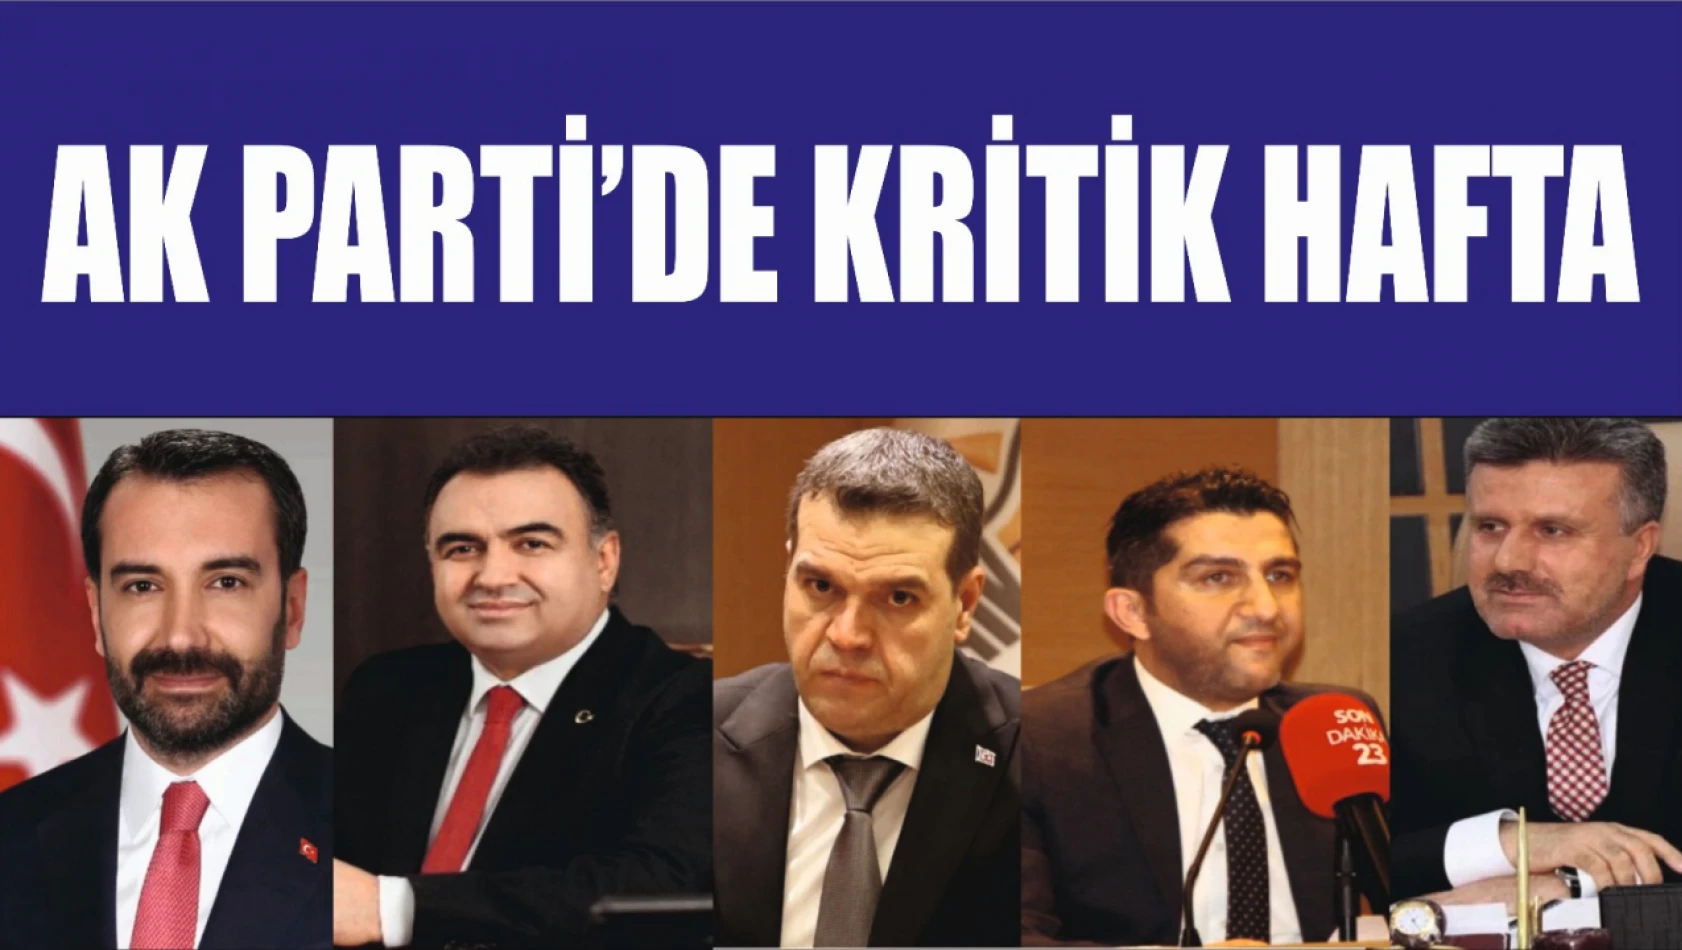 Ak Parti'de Kritik Hafta